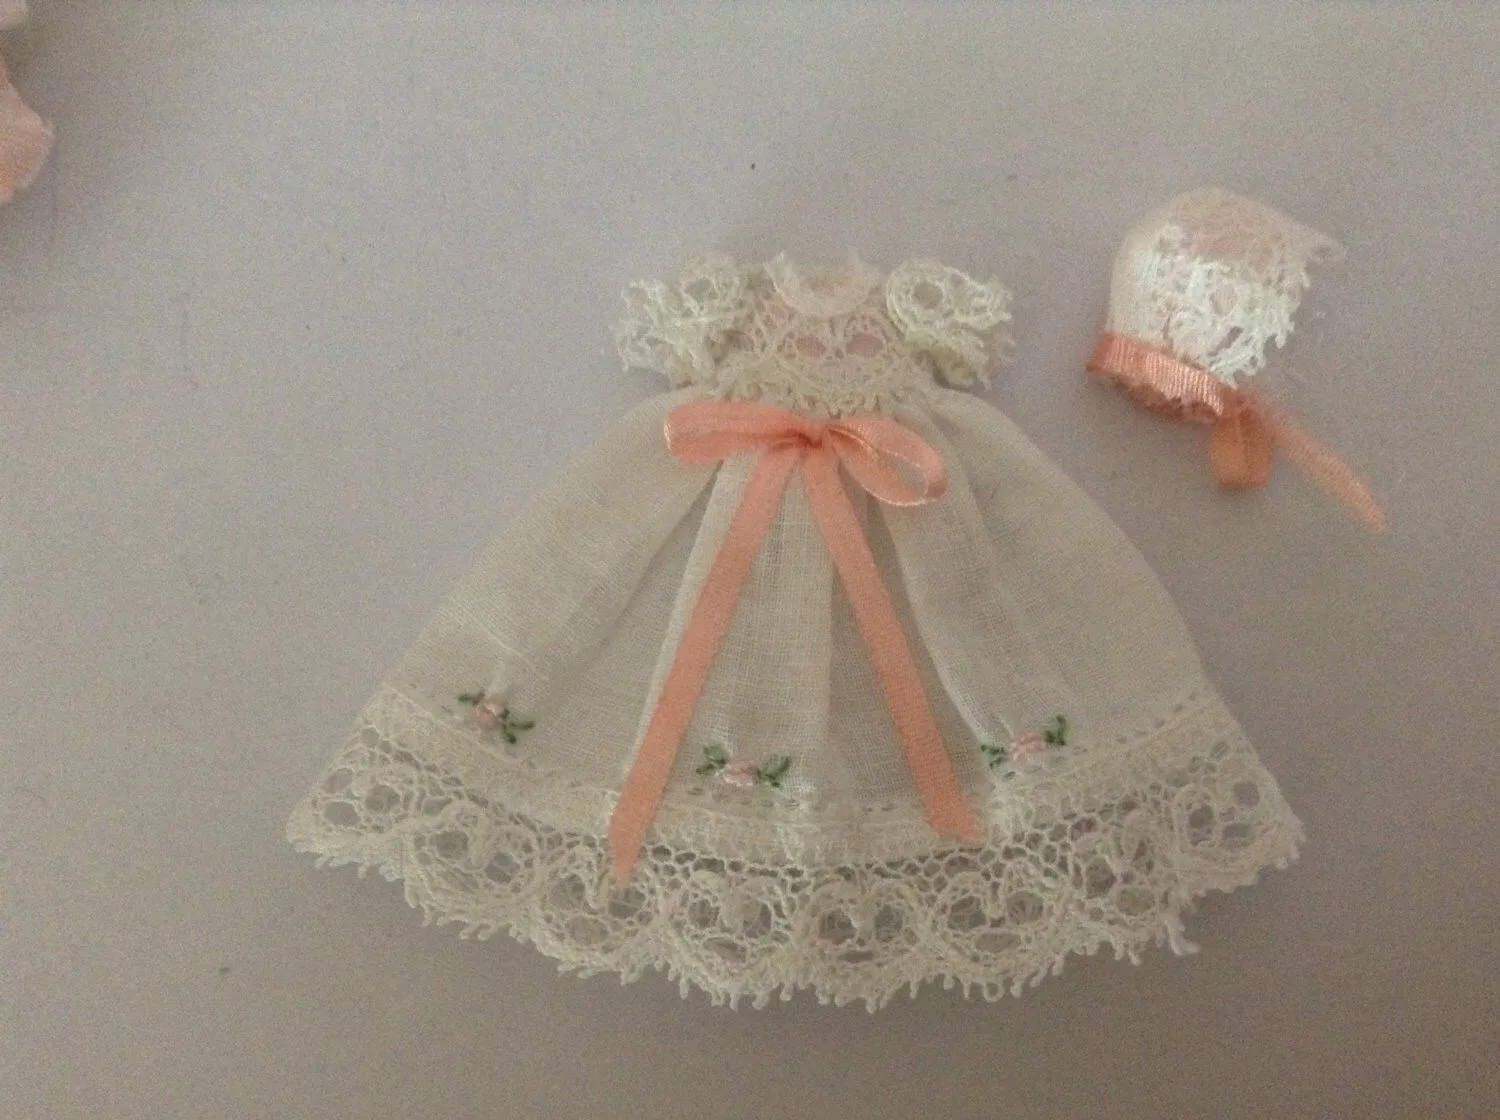 Como hacer ropa de bebé en miniatura - Imagui